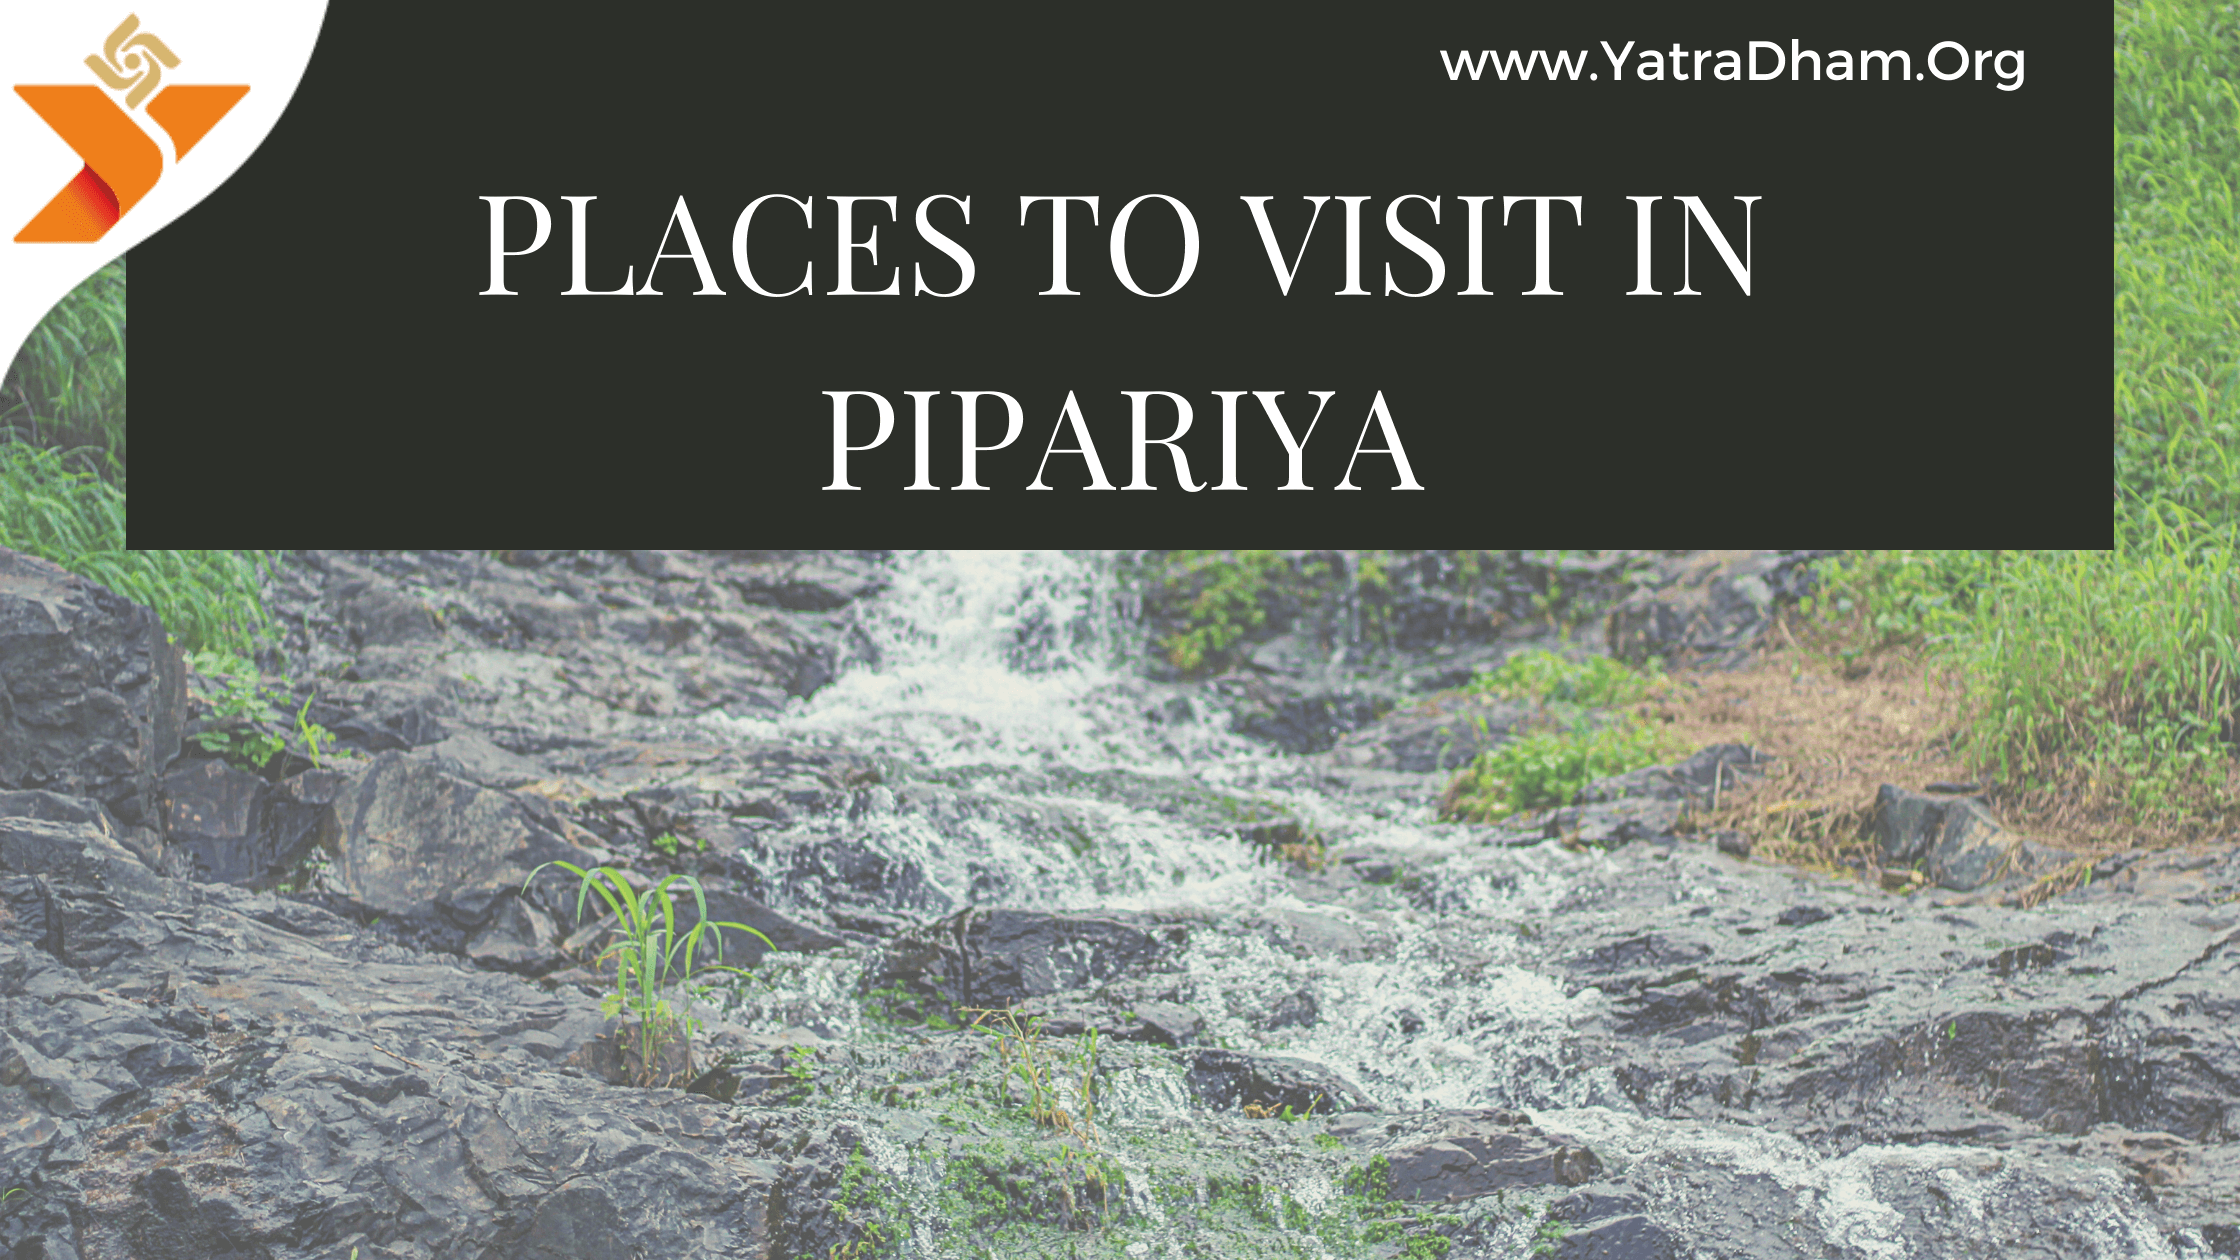 Pipariya, Madhya Pradesh